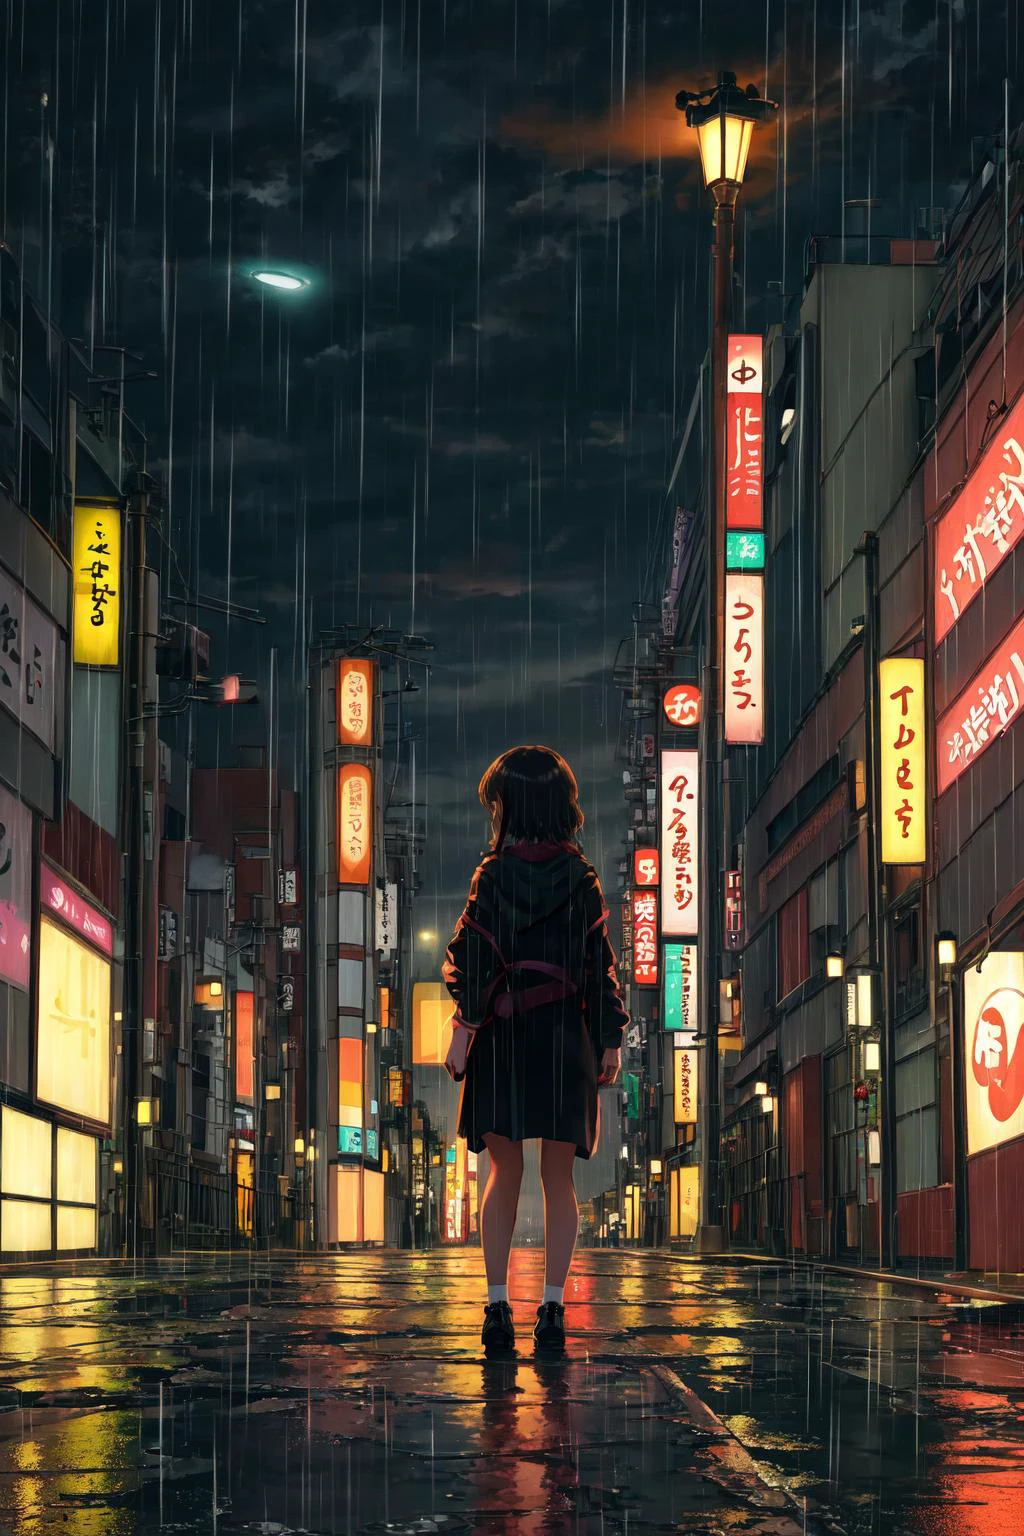 傑作,最好的品質,1個女孩,獨自的,看著觀眾,深夜, 東京, 荒無人煙的街道, 遠景, 背景, 孤独, 雨, 路燈, 弱光,